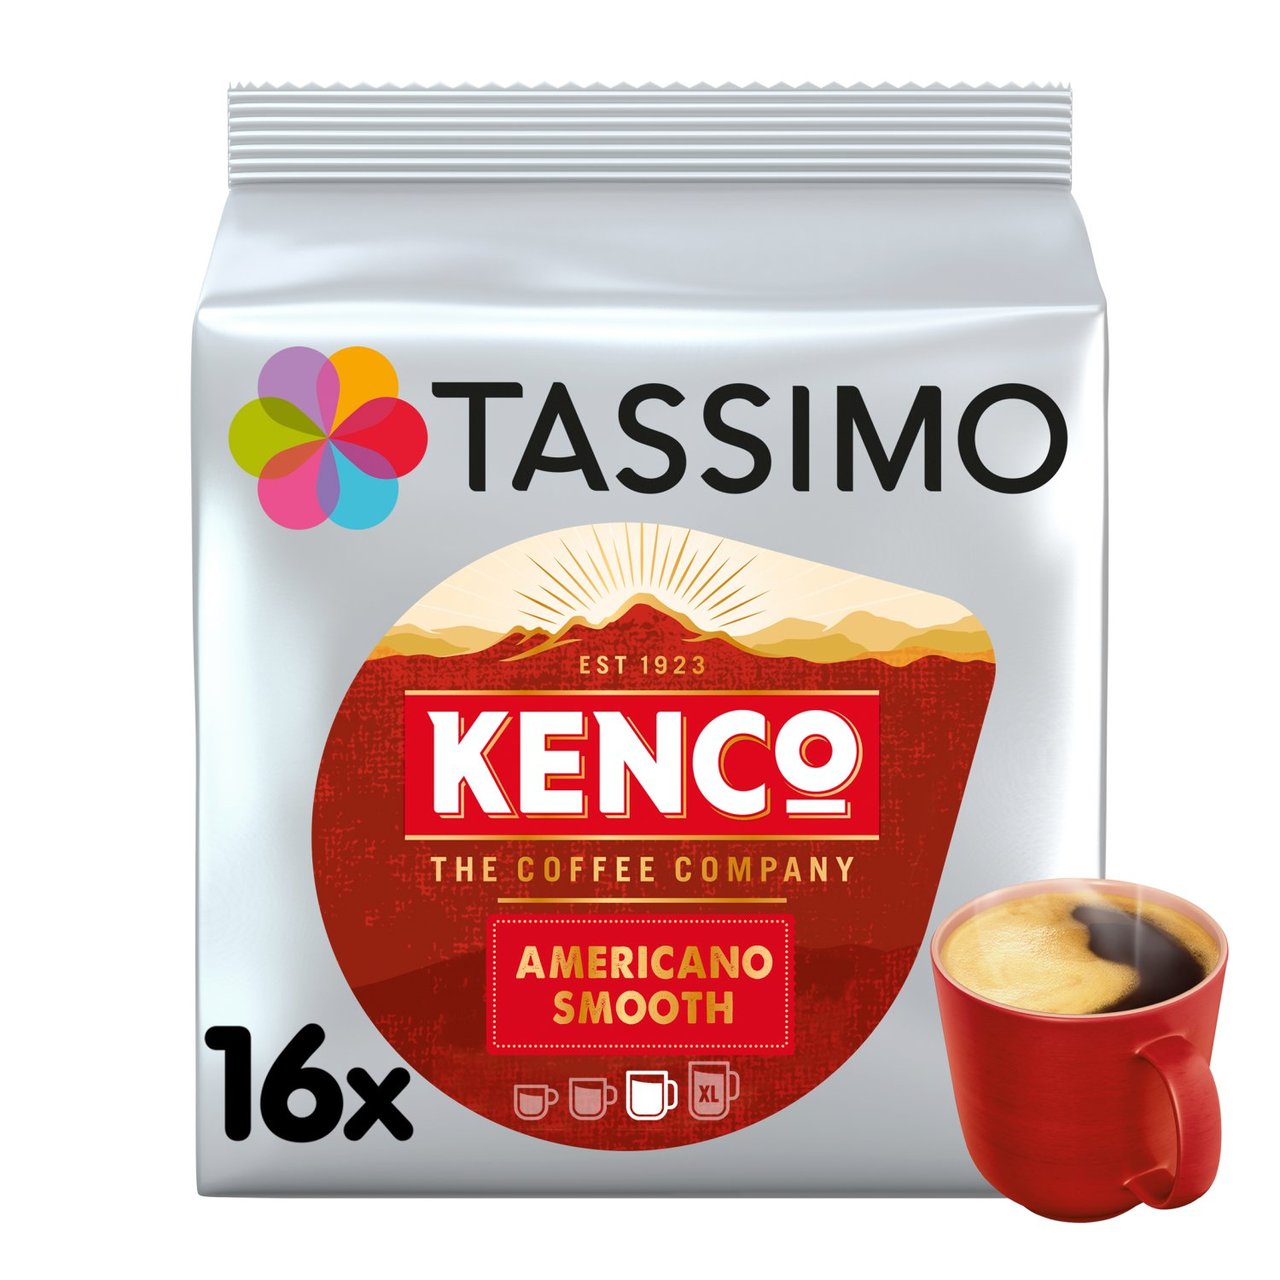 TASSIMO T-Disc Pod Coffee Chocolate Cappuccino Latte Americano Costa  Macchiato